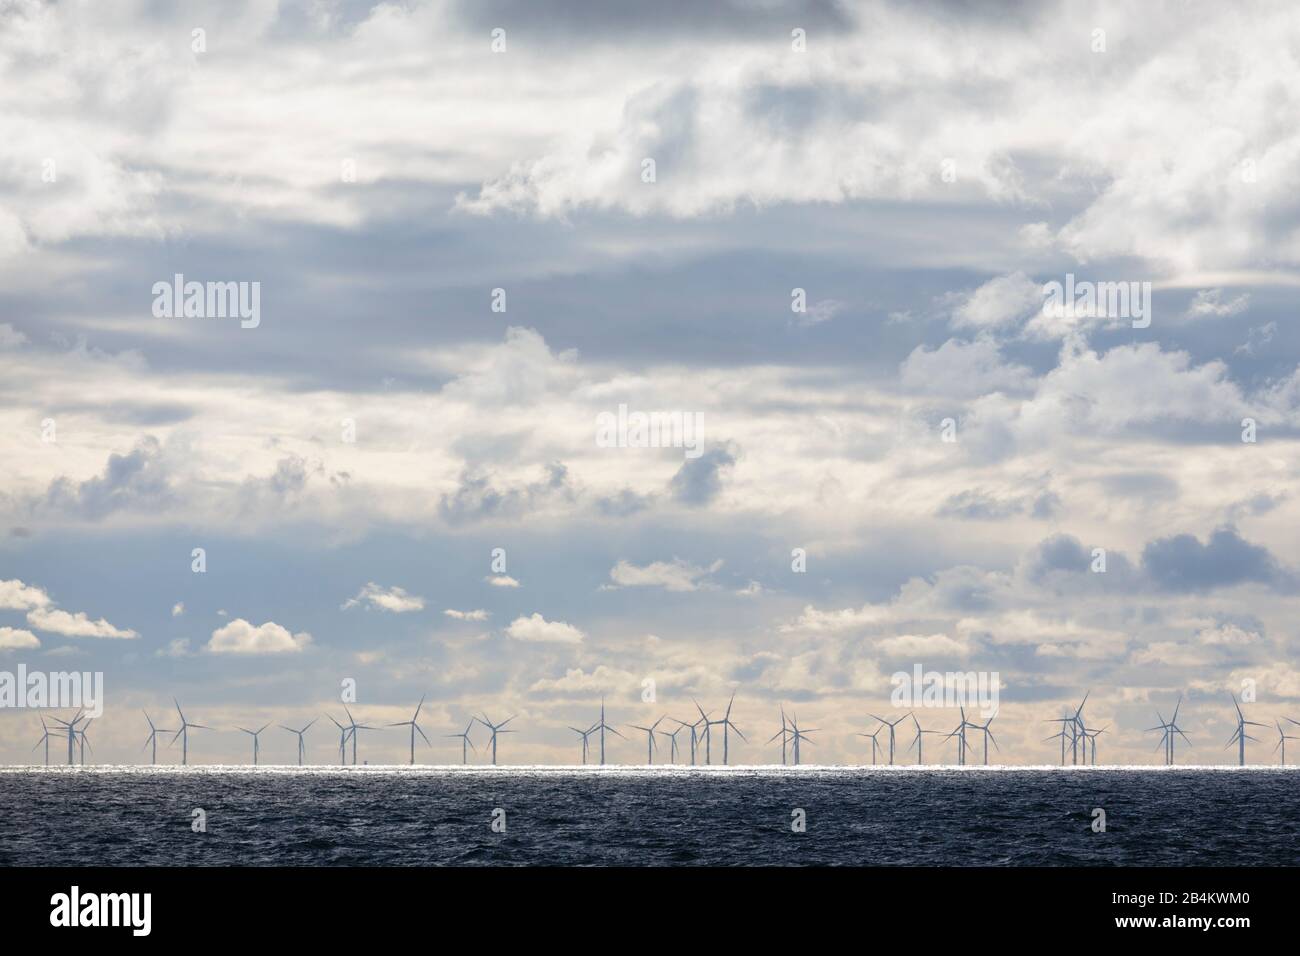 Europa, Dänemark, Bornholm. Zwischen Bornholm und Rügen ragen die Windkraftanlagen des Offshore-Windparks »Wikinger« aus der Ostsee. Foto Stock